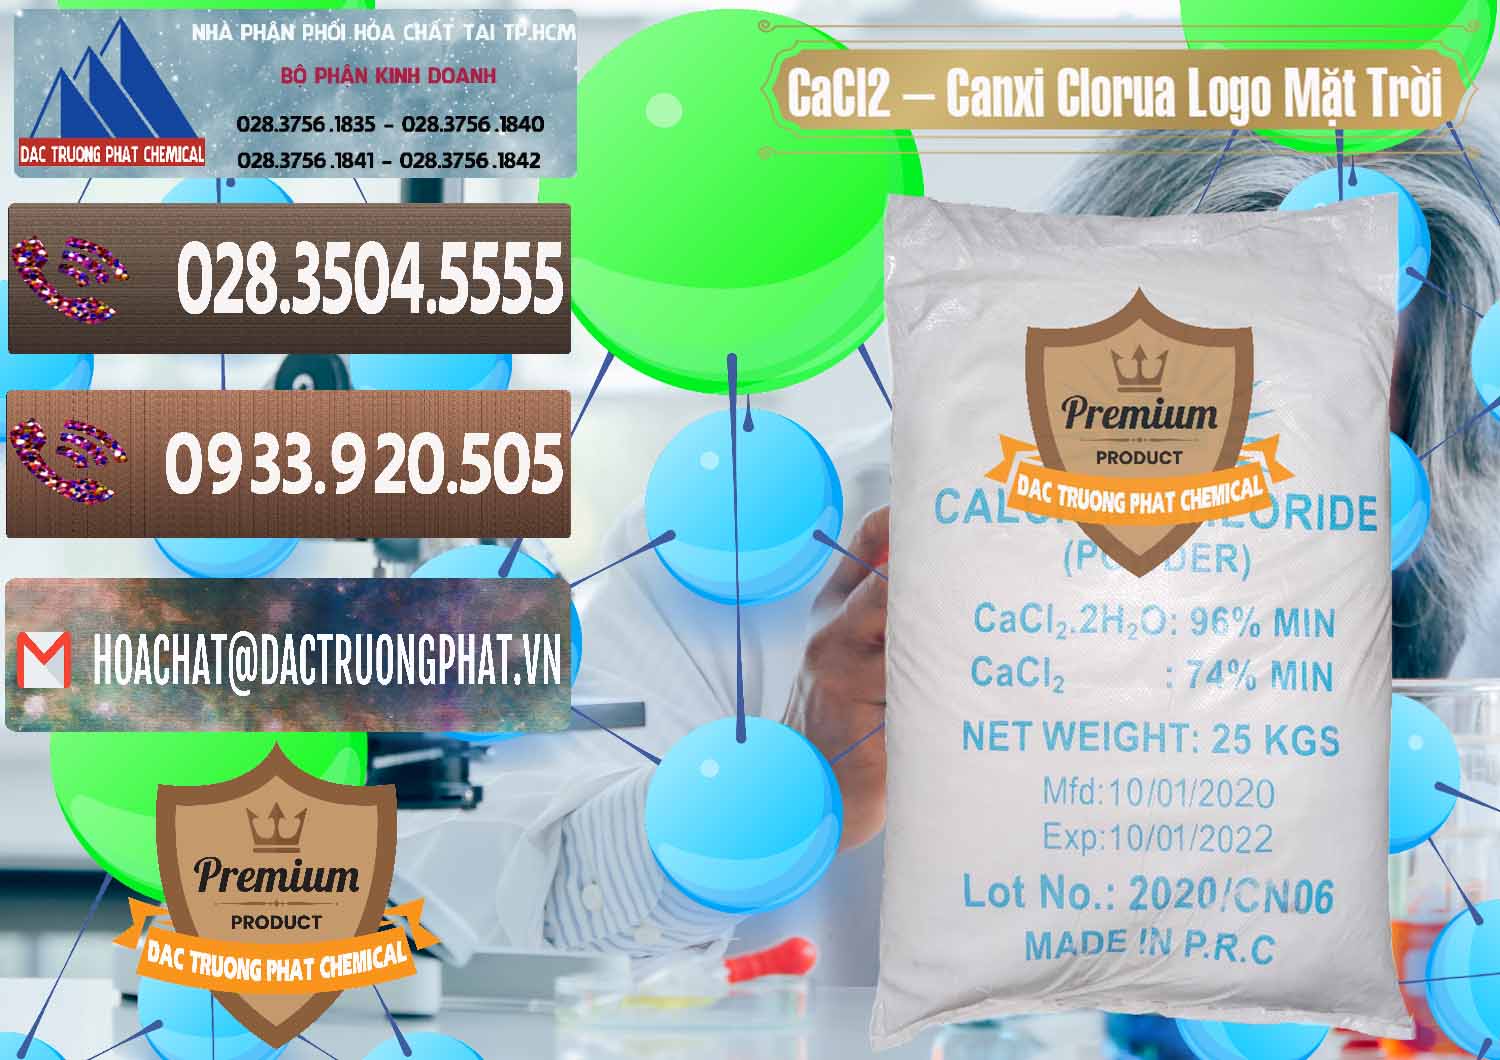 Kinh doanh ( bán ) CaCl2 – Canxi Clorua 96% Logo Mặt Trời Trung Quốc China - 0041 - Chuyên cung cấp & nhập khẩu hóa chất tại TP.HCM - hoachatviet.net